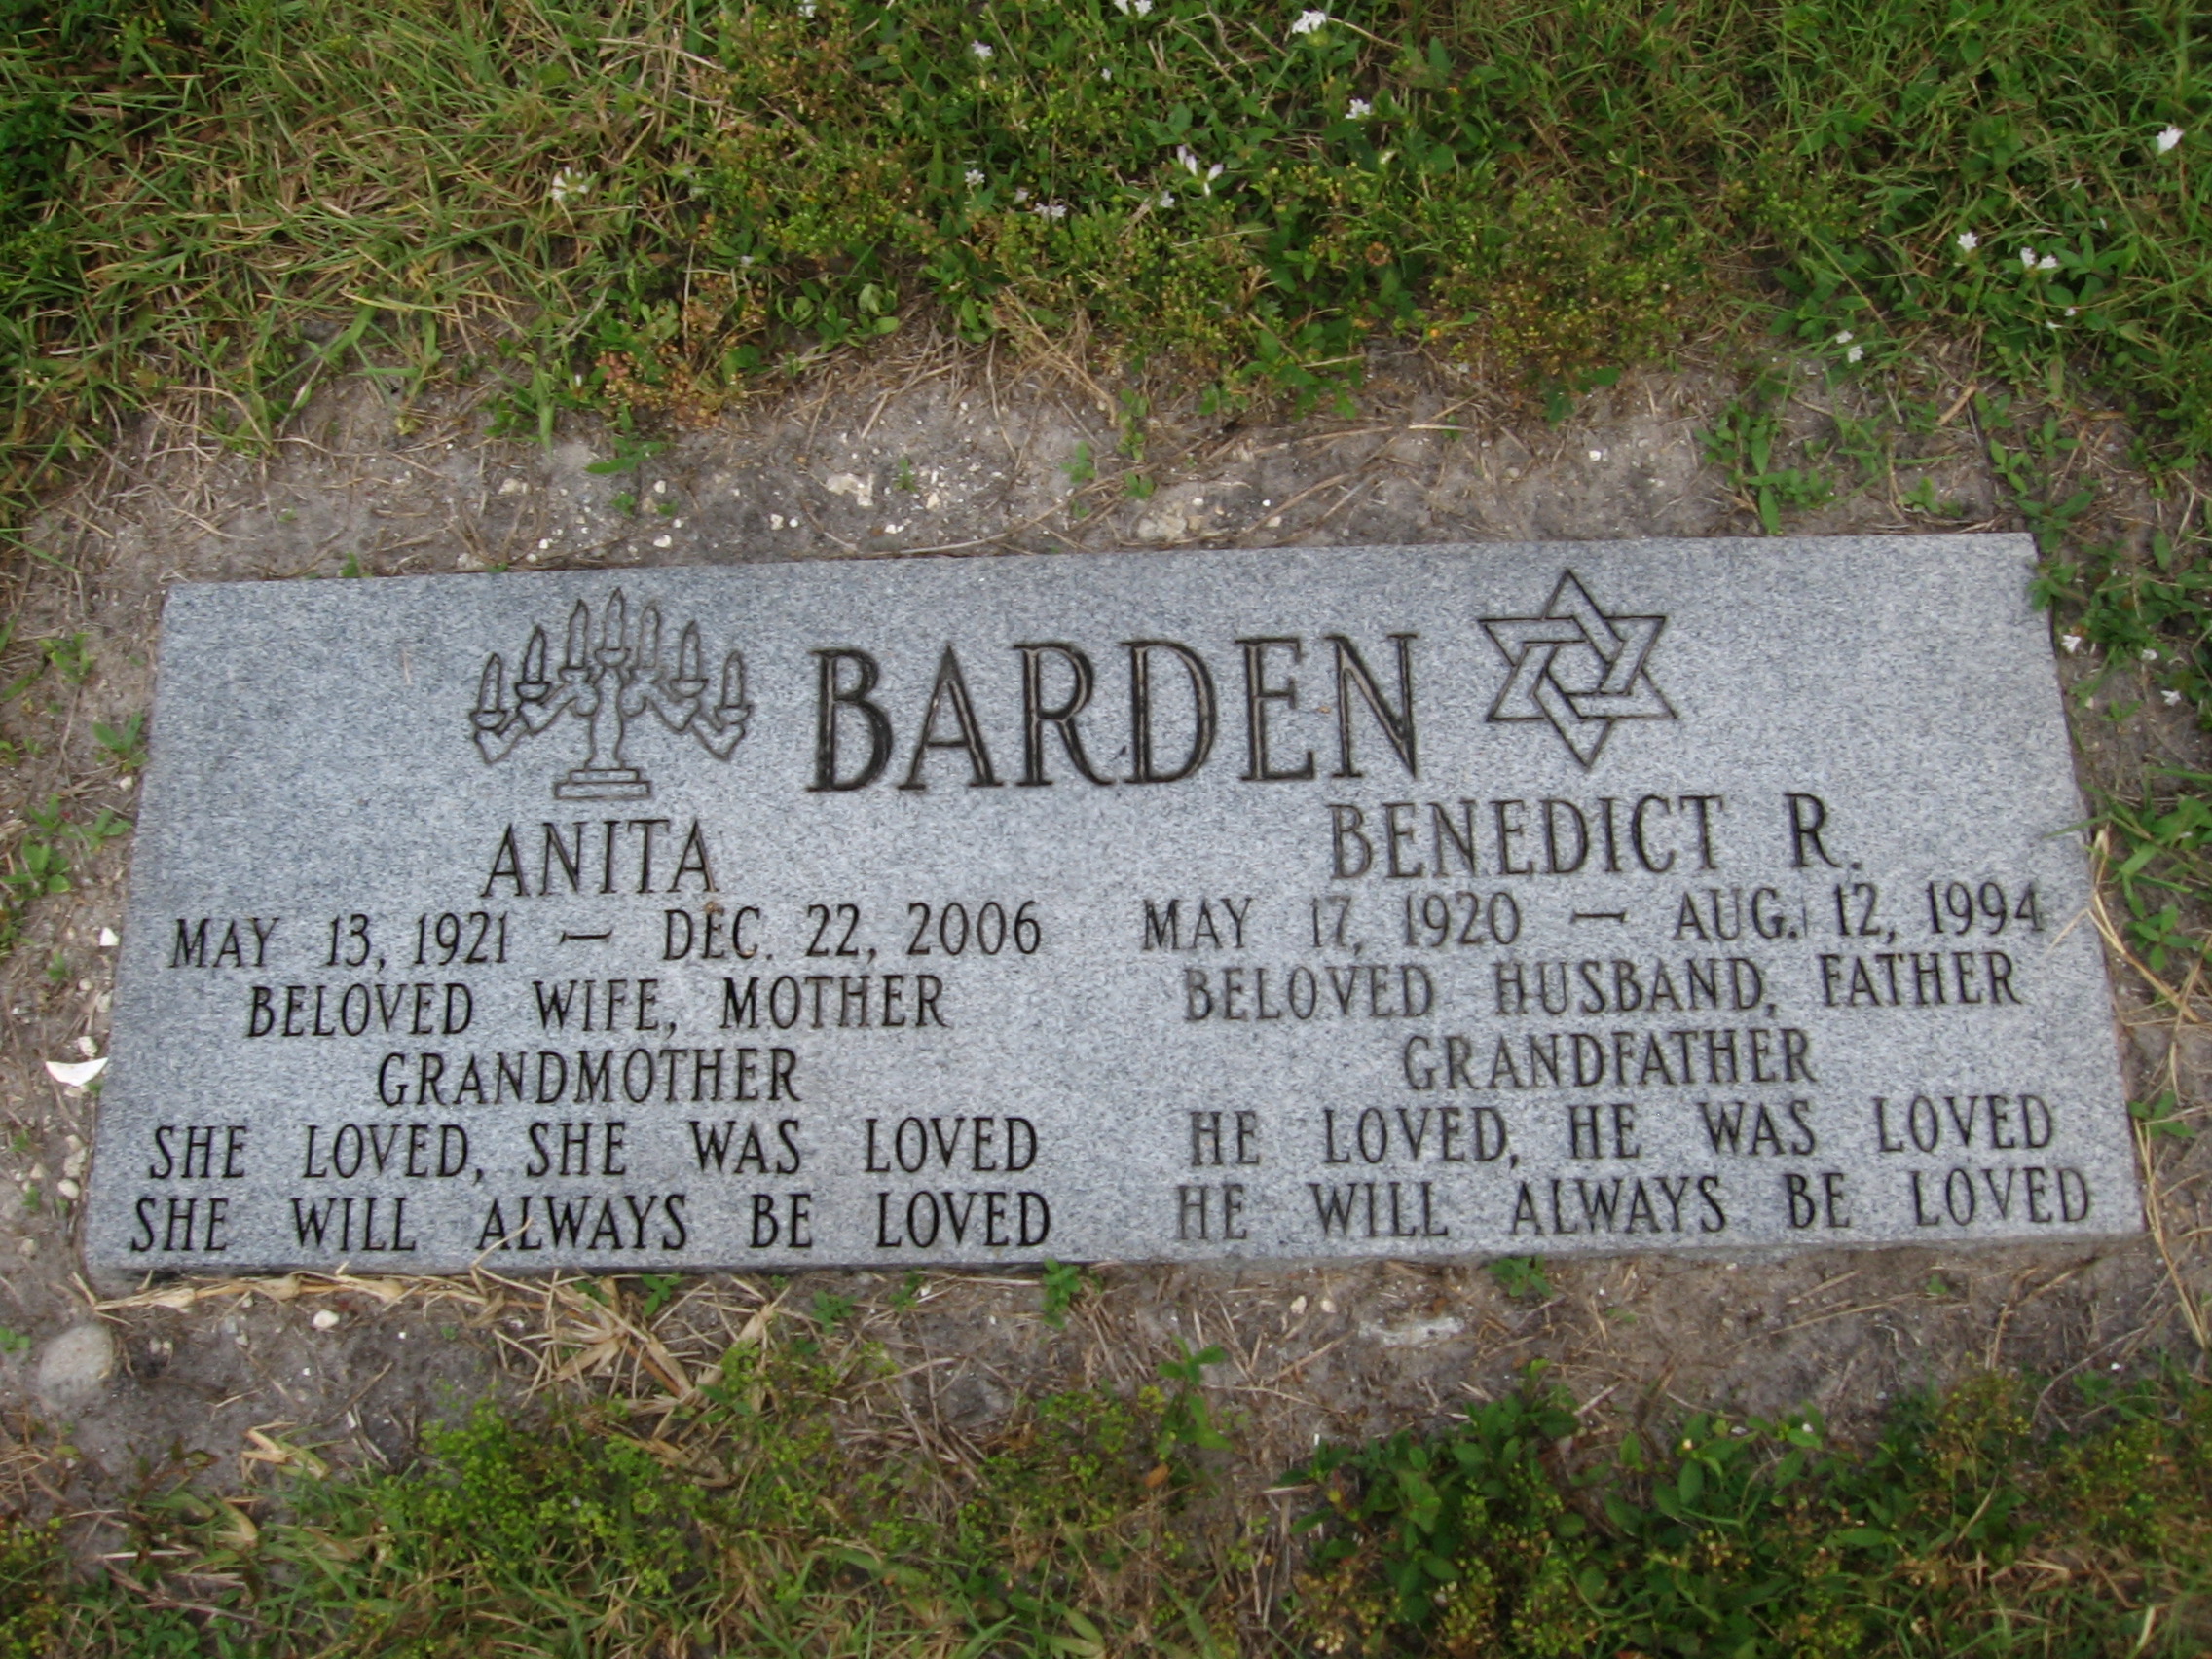 Benedict R Barden